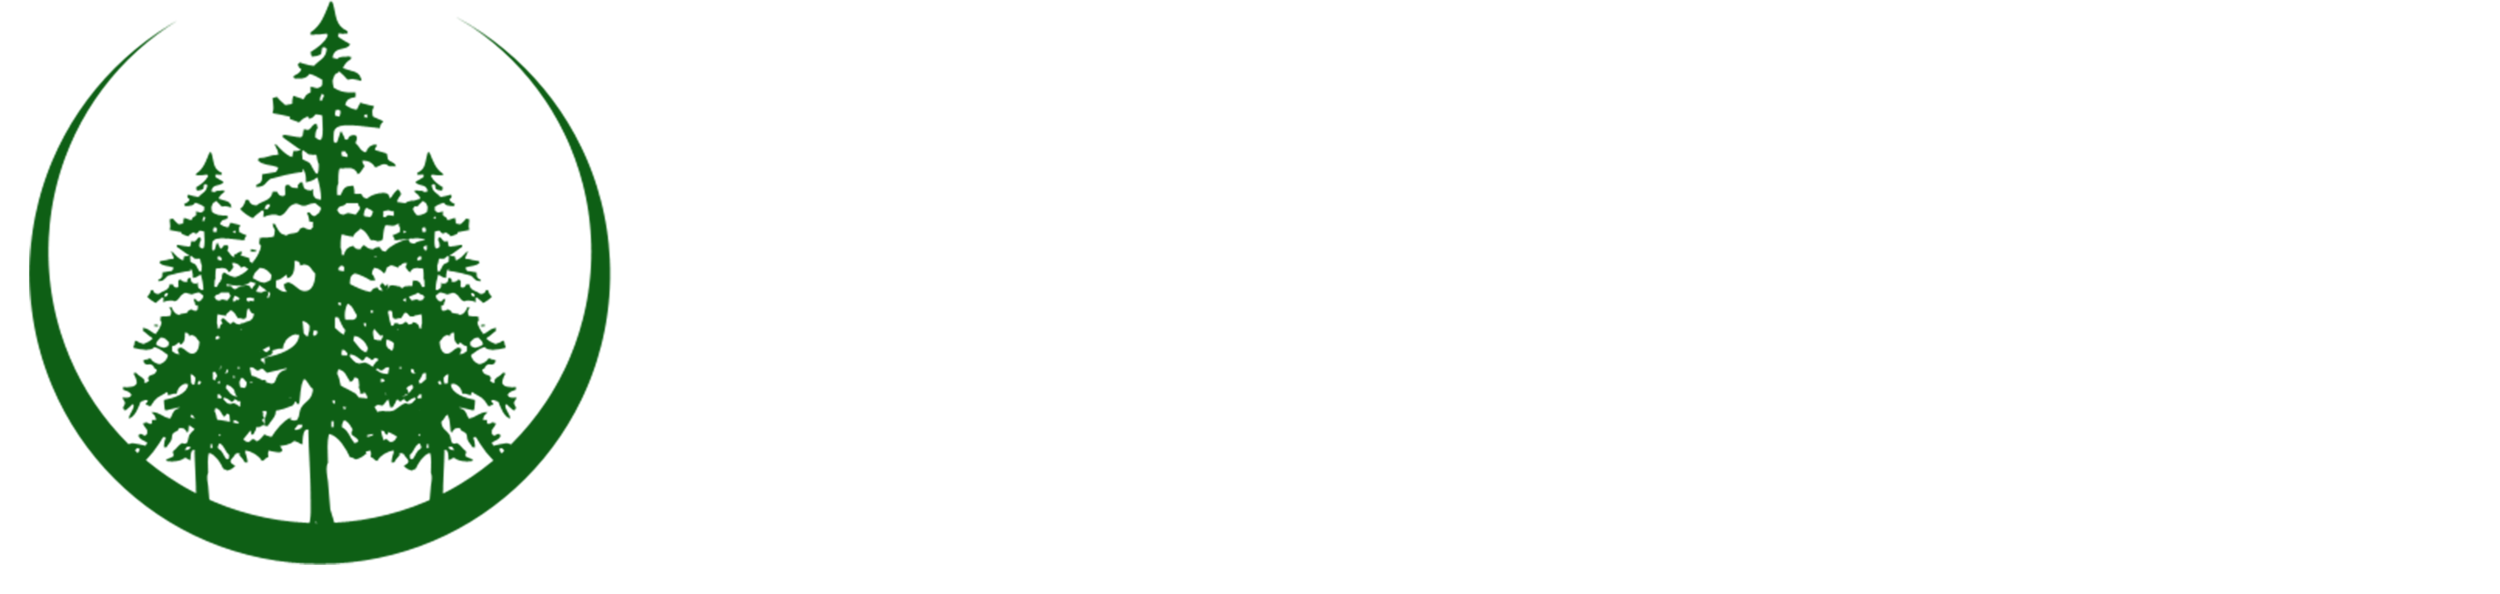 WINDHAM WOODS SCHOOL